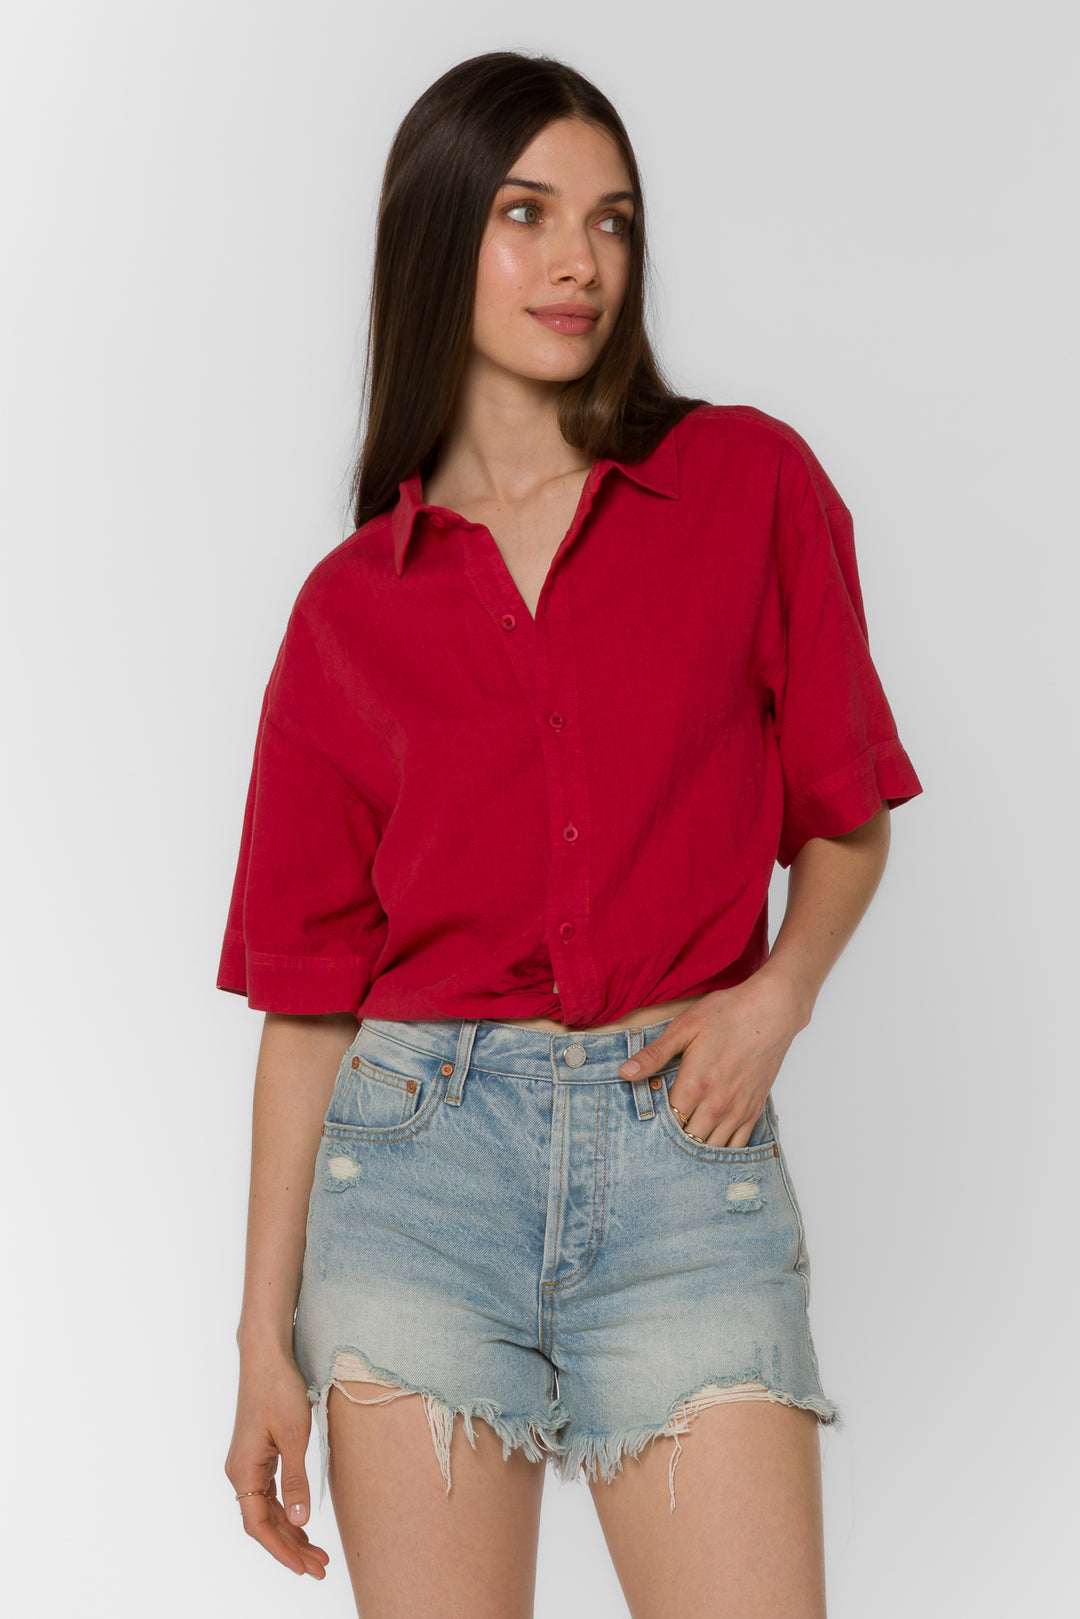 Glenna Spicy Red Shirt - Tops - Velvet Heart Clothing